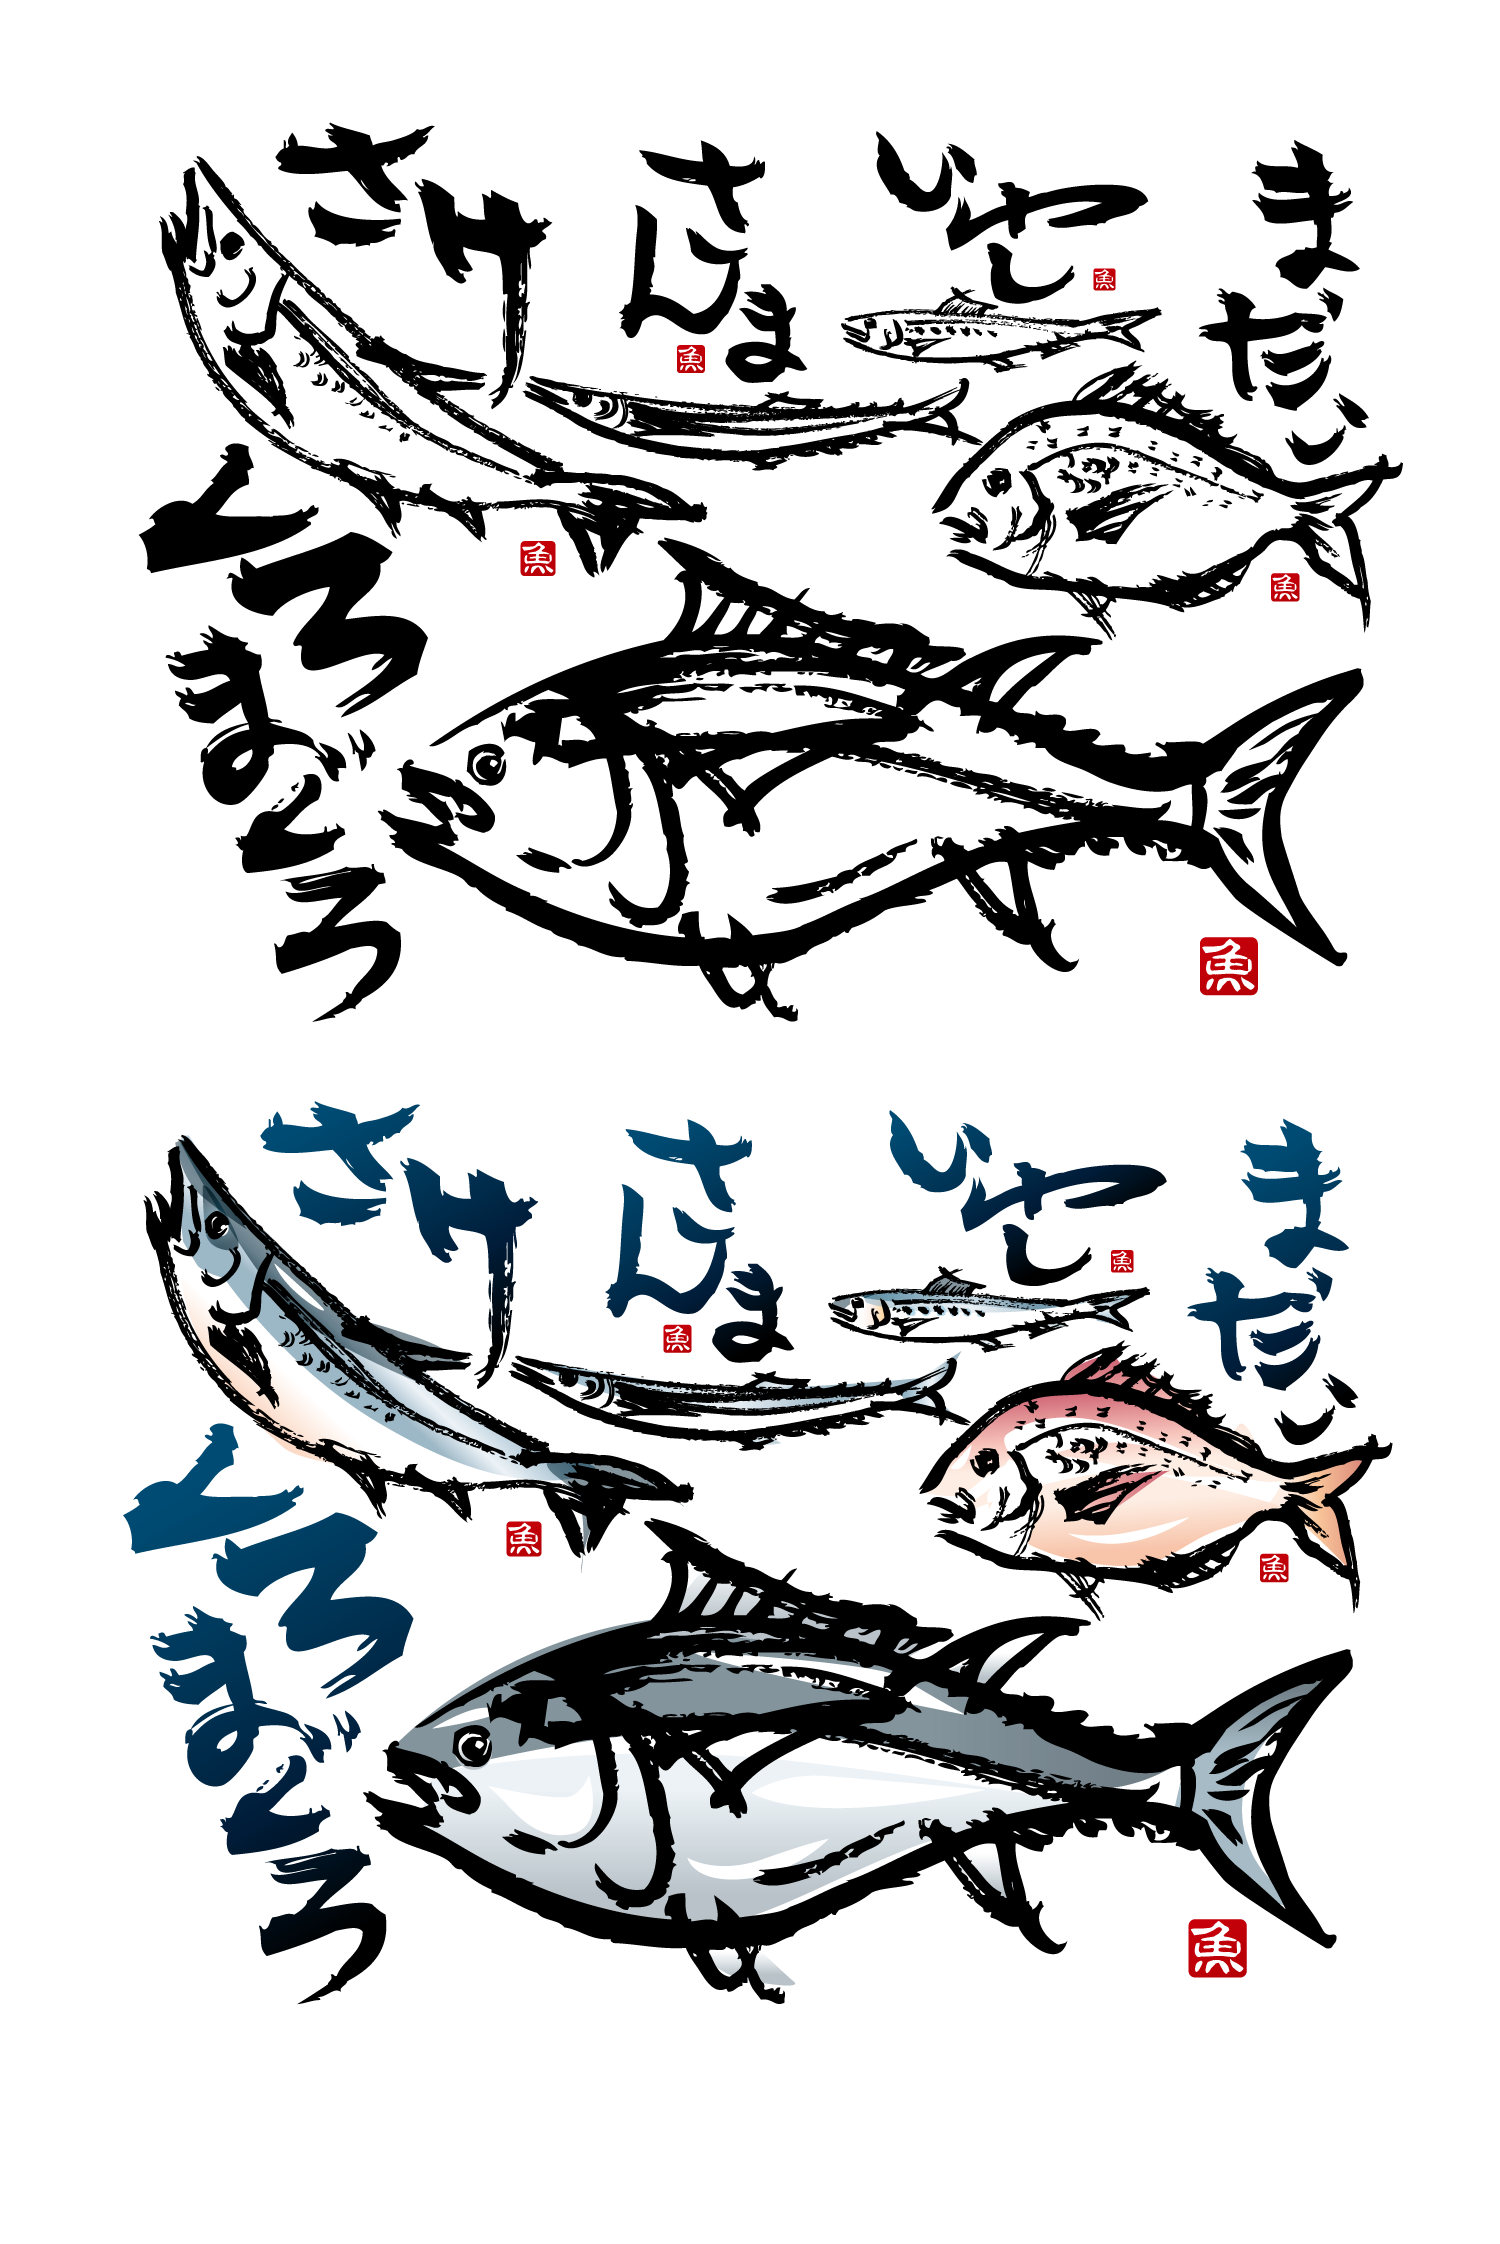 日式料理店视觉毛笔手会海鲜鱼类矢量素材2